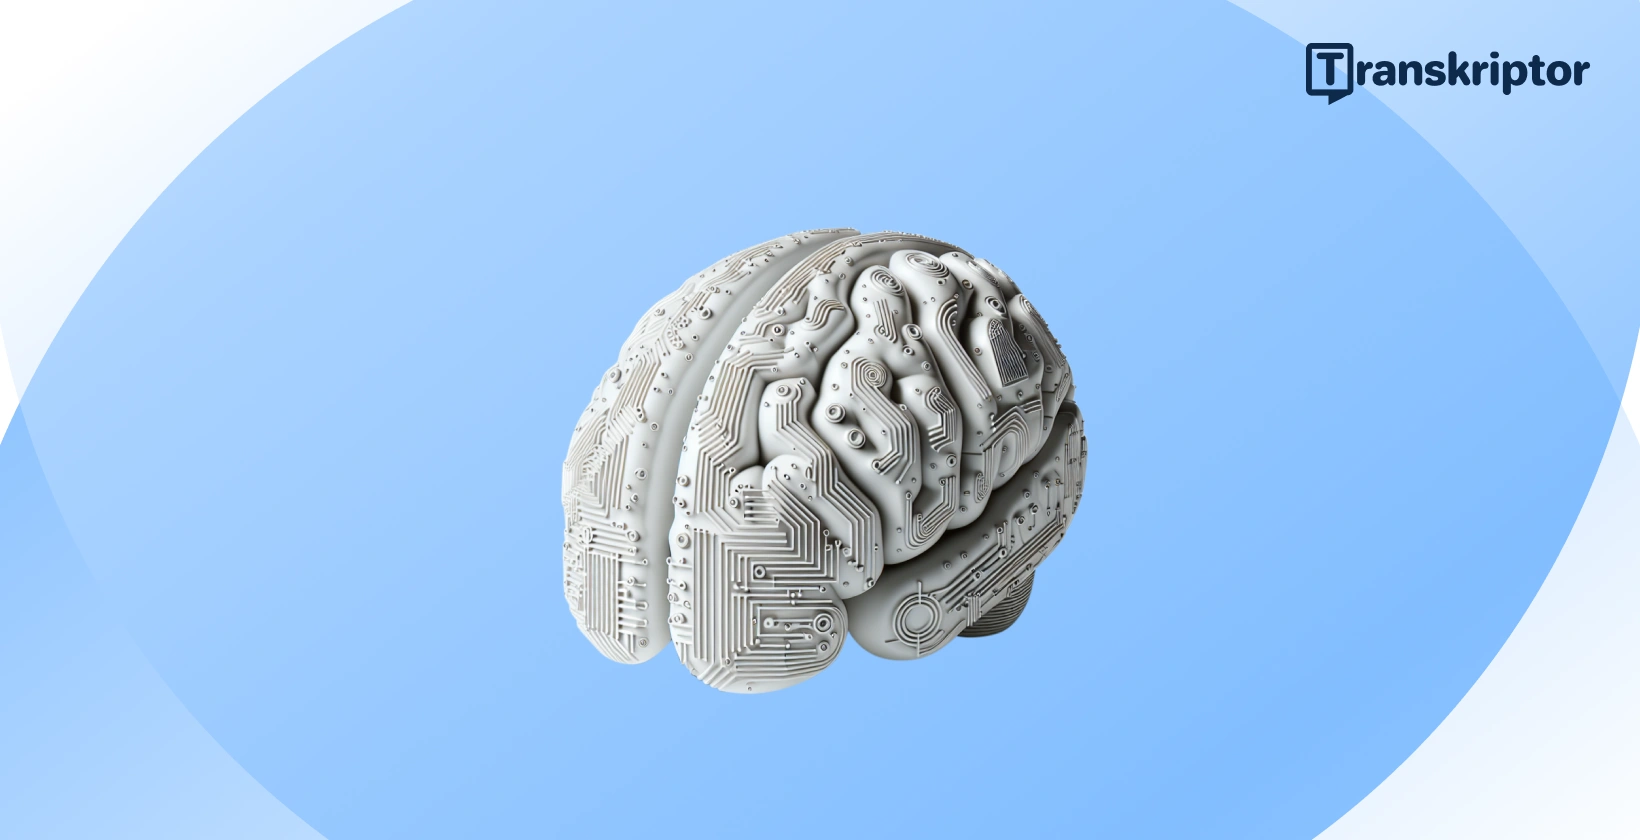 En illustration AI-hjerne, der afspejler integrationen af kunstig intelligens i moderne regnskabspraksis.